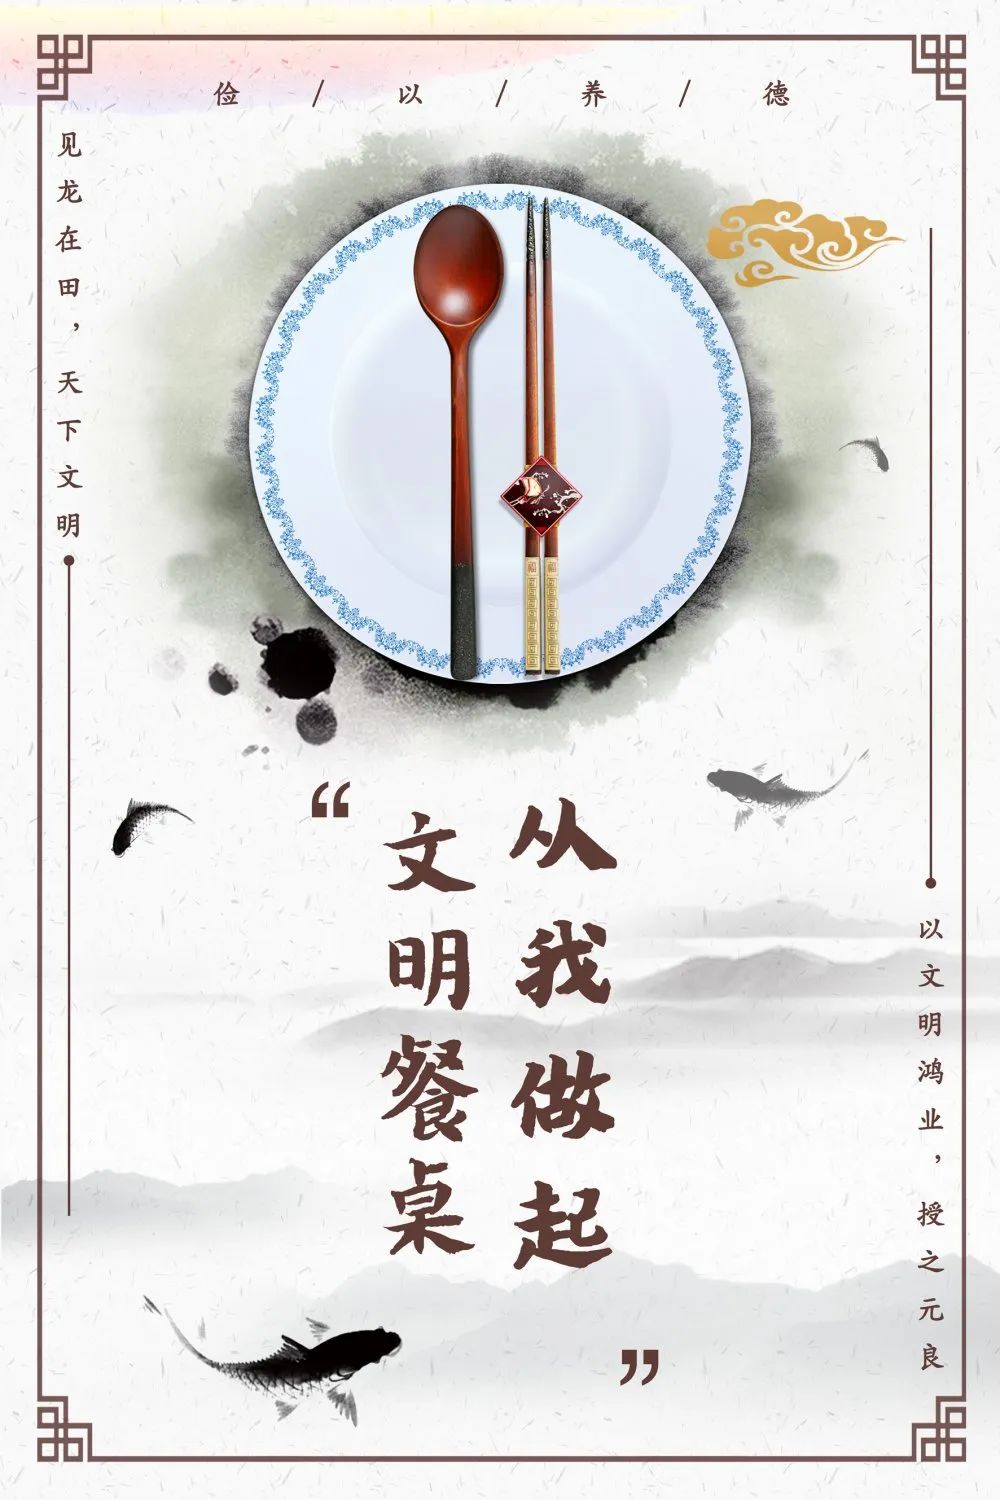 公筷公勺 分餐分食,甘肃发出文明餐桌行动倡议